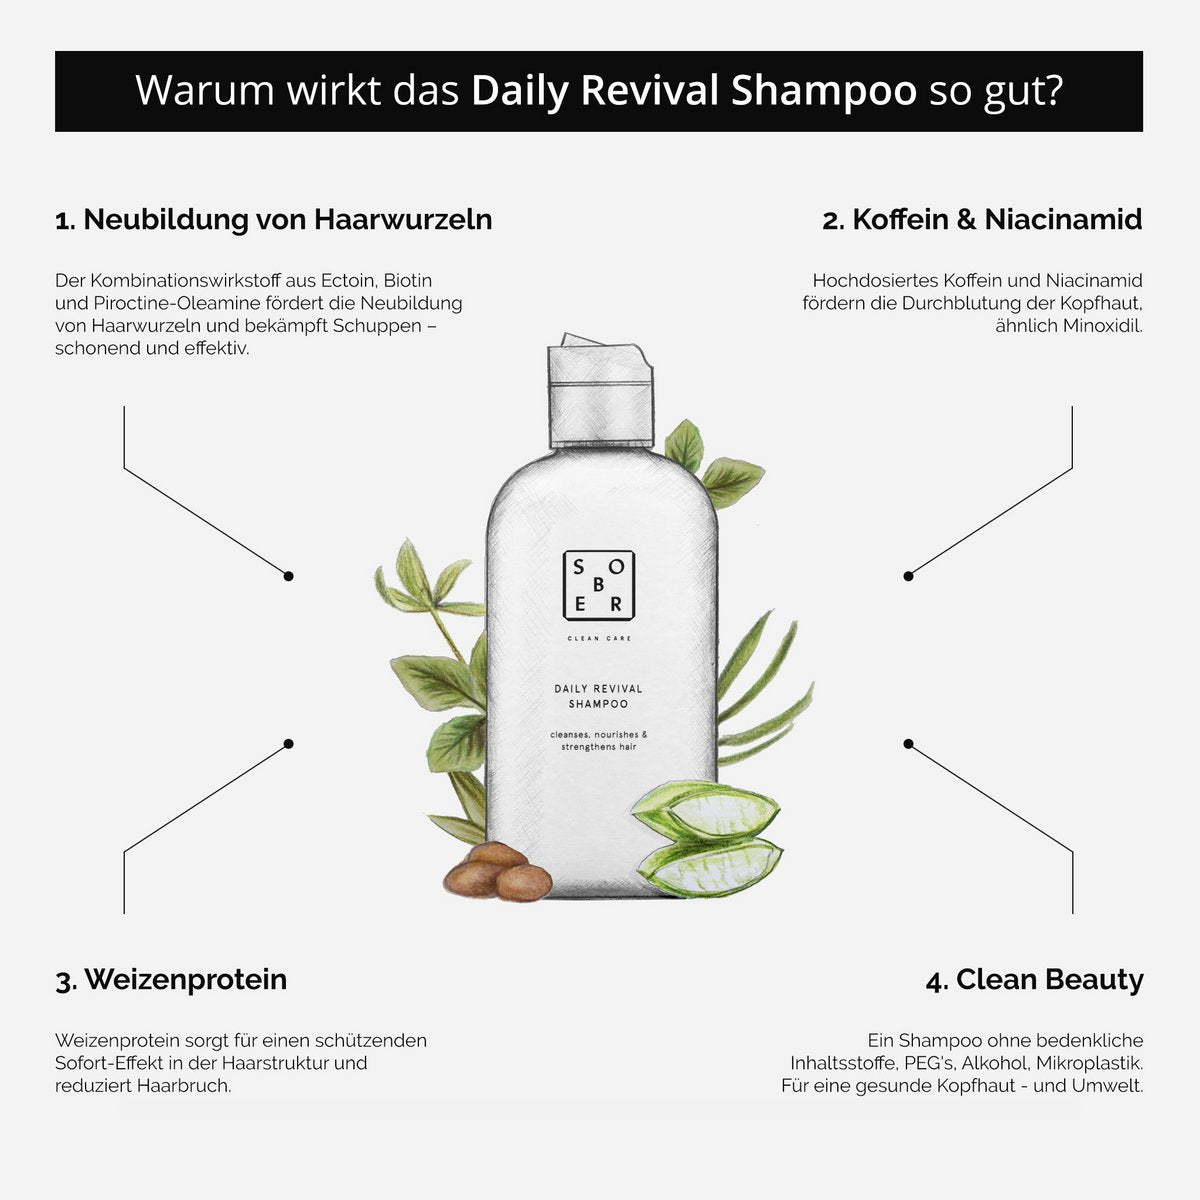 Daily Revival Shampoo